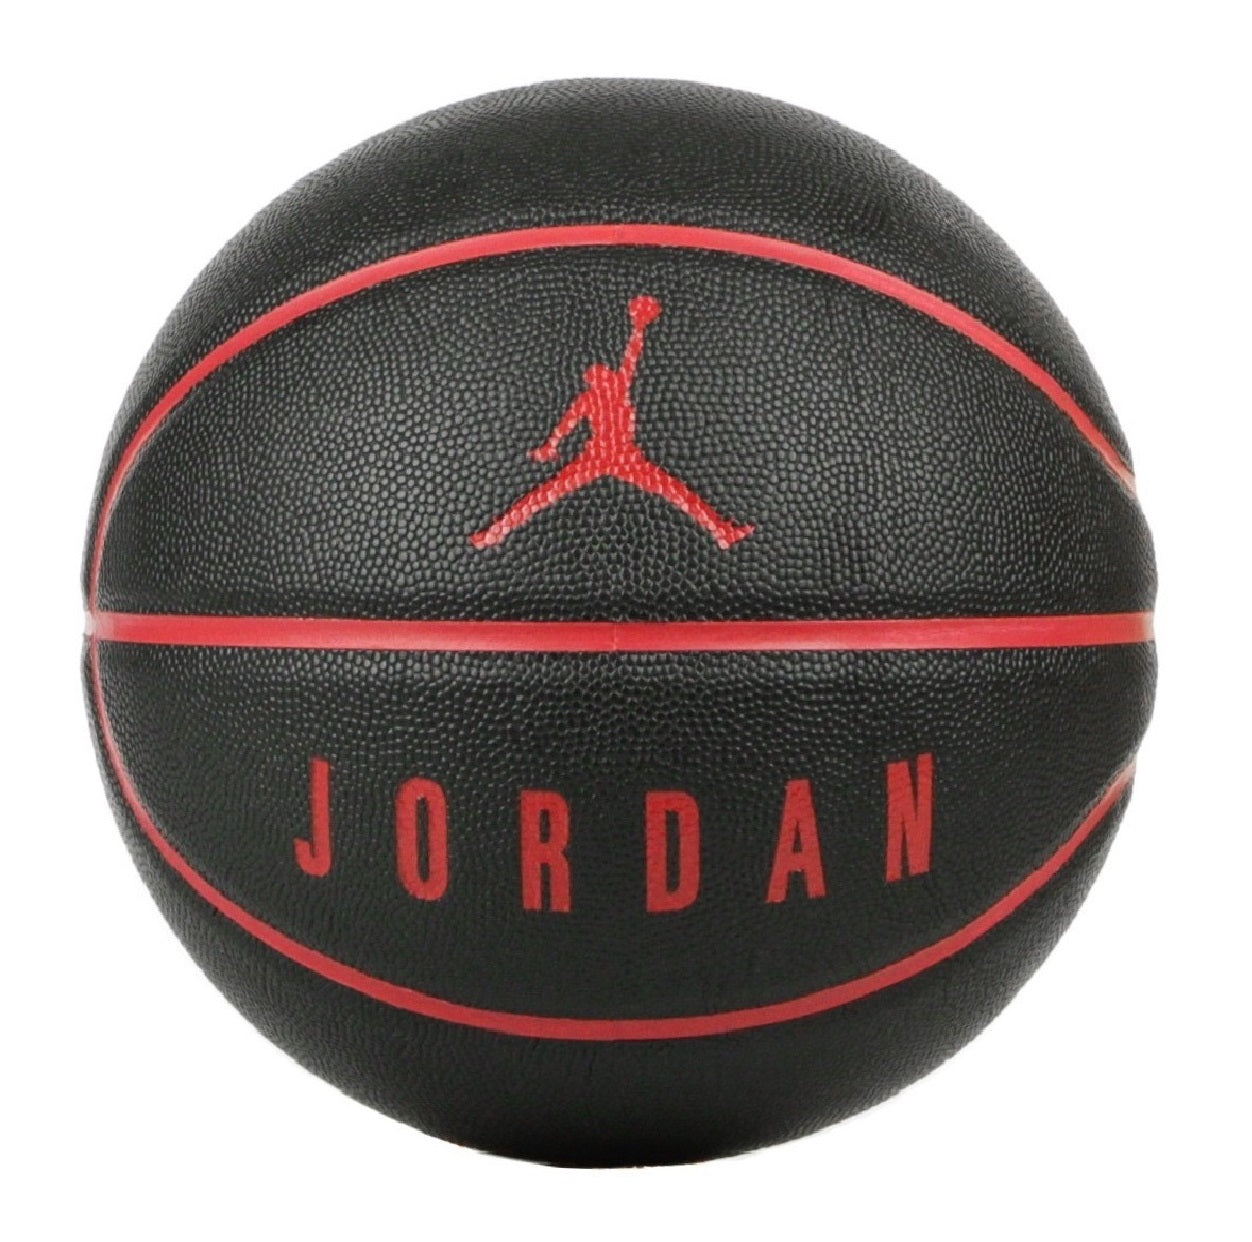 Jordan pallone da pallacanestro Ultimate nero-rosso misura 7